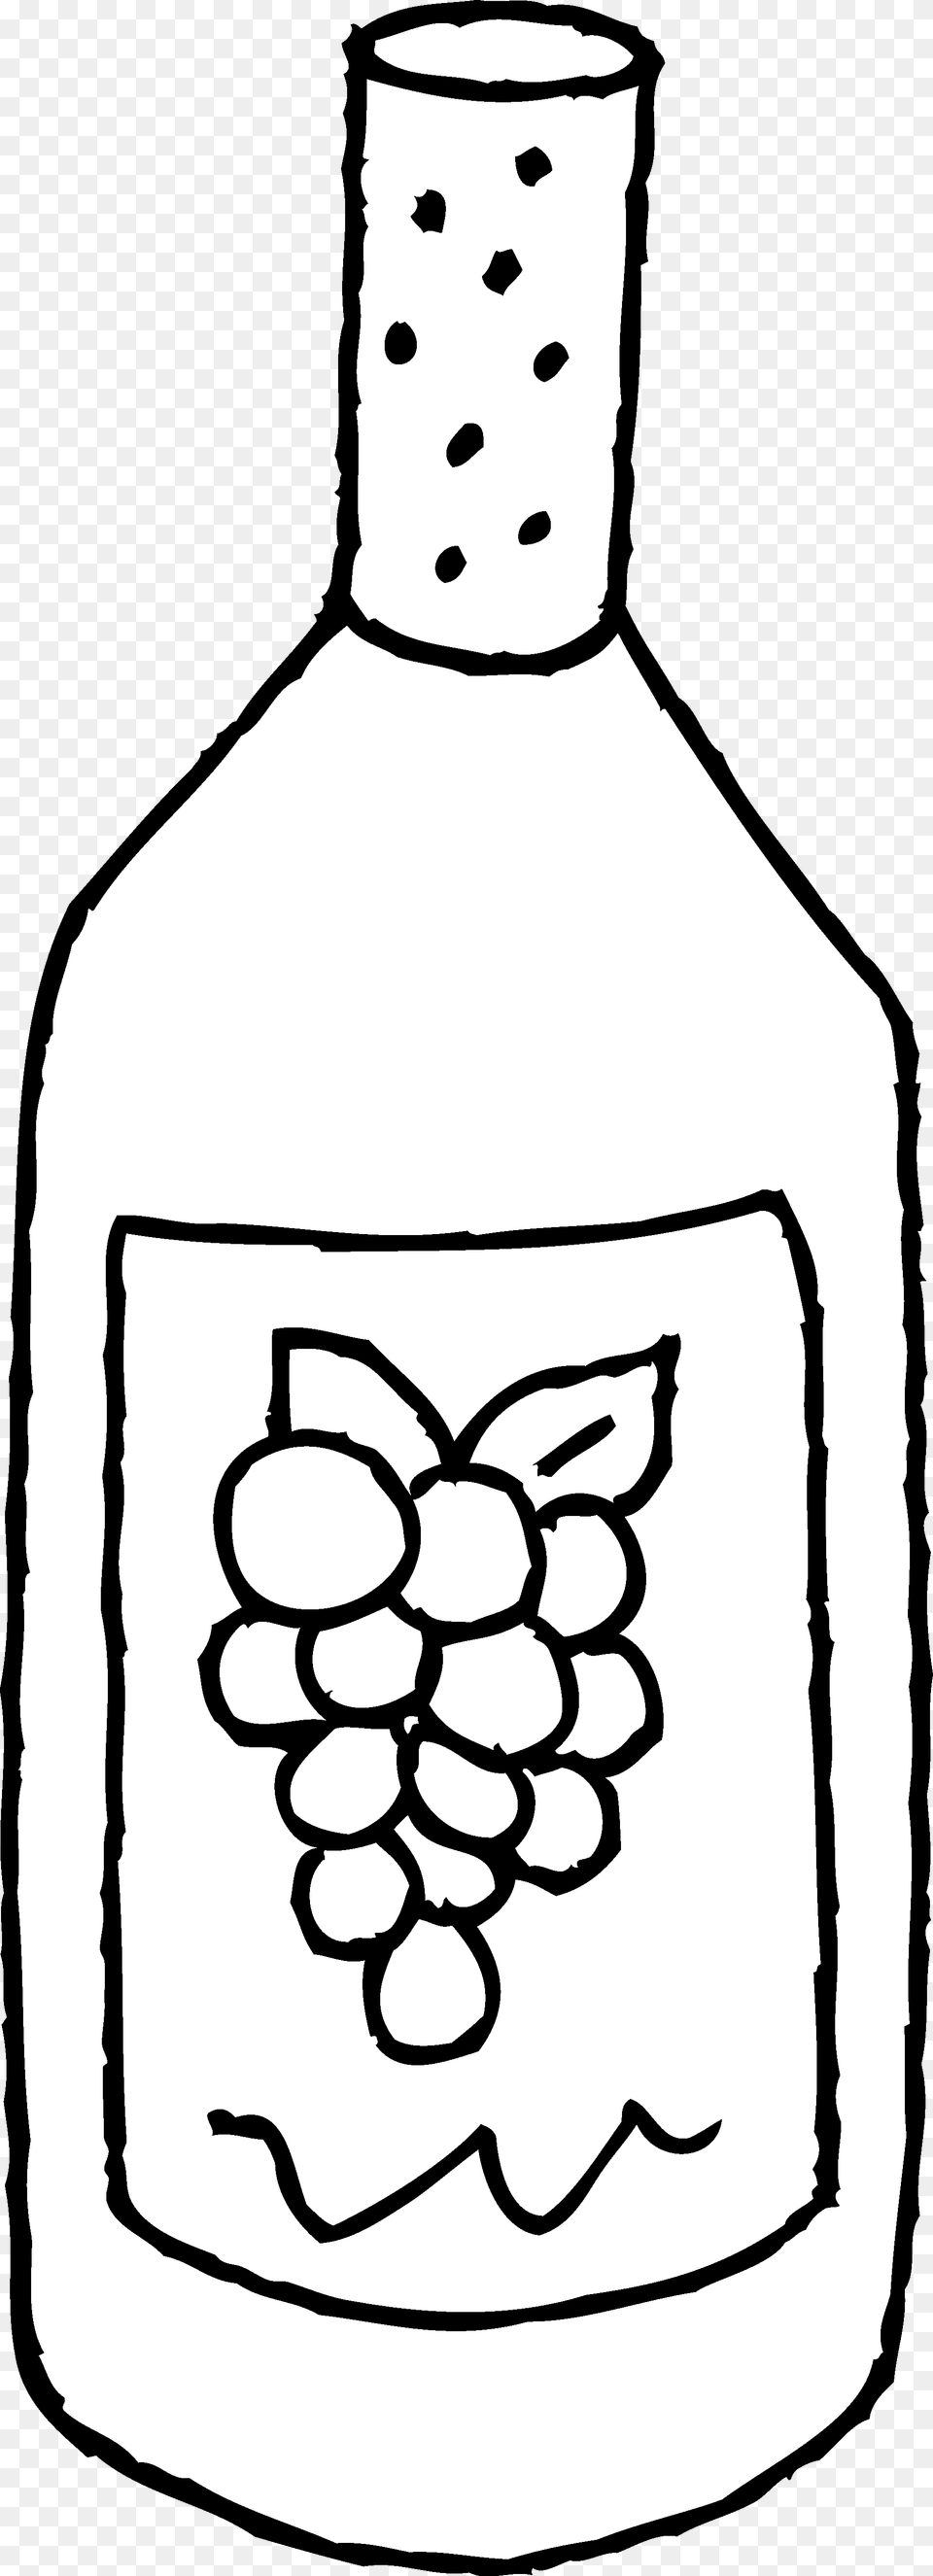 Wine Bottle Bottle Of Wine Line Art Clip Clipart Bottle Of Wine Clipart Black And White, Alcohol, Beverage, Ammunition, Grenade Png Image